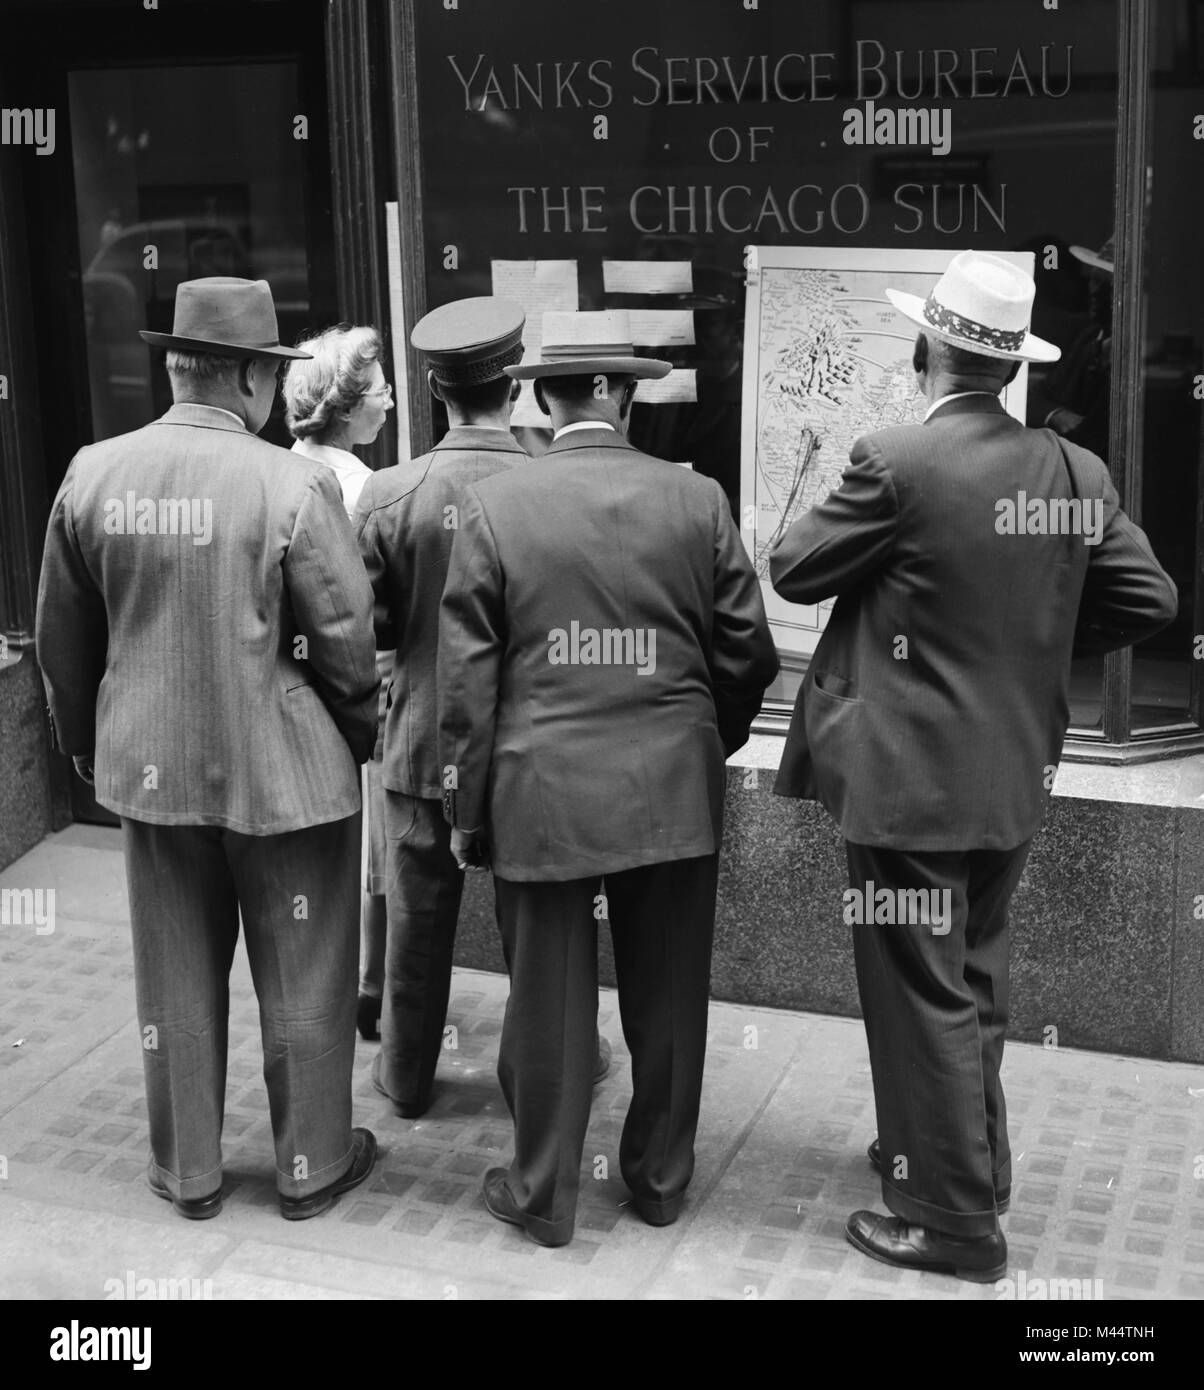 Une foule se rassemble en face d'une guerre mondiale II news mise à jour dans la fenêtre d'un Bureau de services américains le Chicago Sun, ca. 1944. Banque D'Images